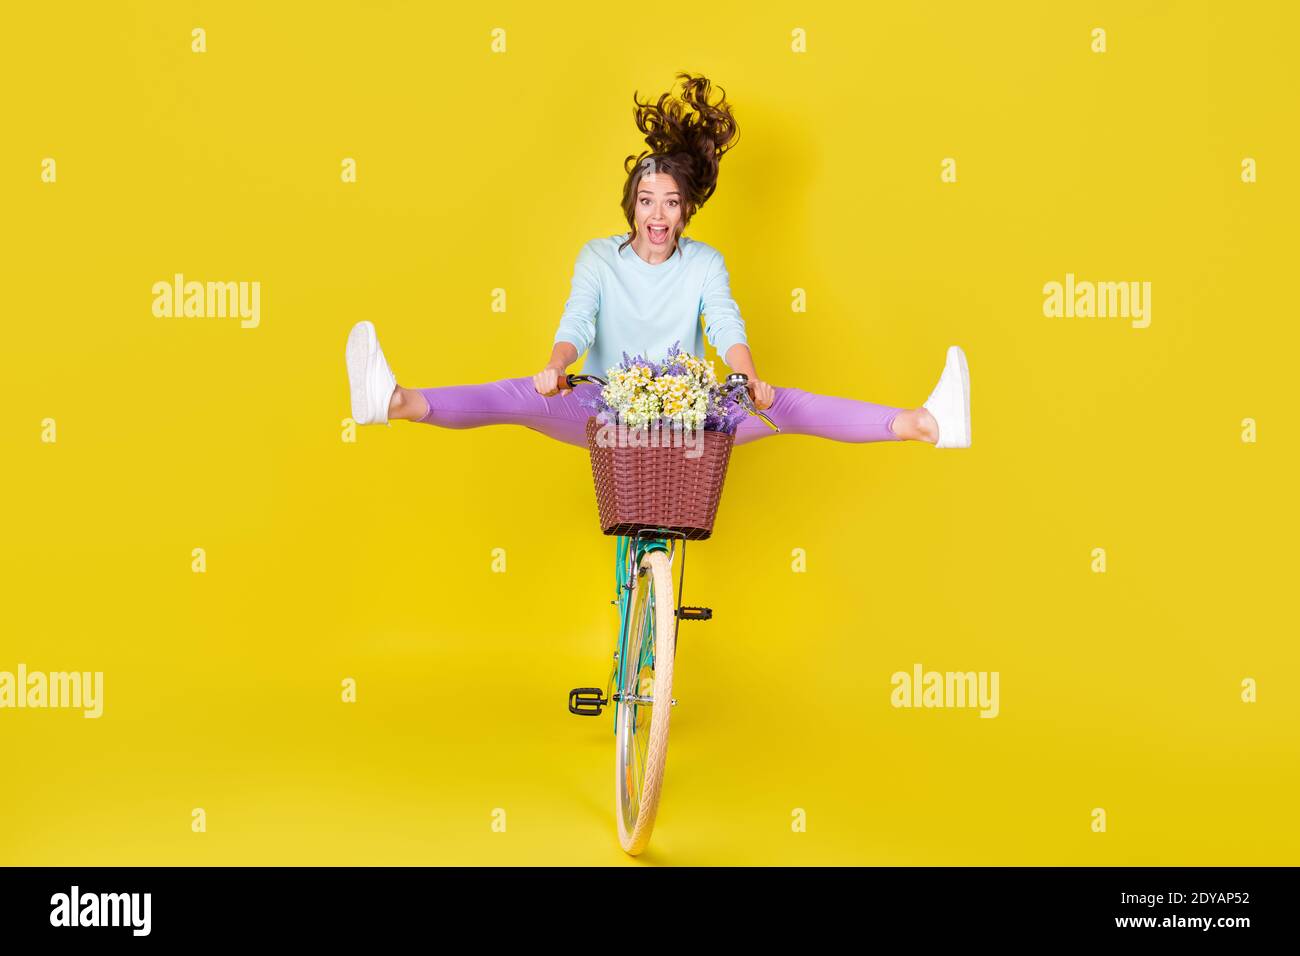 Pleine photo de taille de corps de la jeune fille insane équitation vintage un vélo inhabituel volant de la colline porter des fleurs vent souffle cheveux portez un pantalon violet en pull bleu Banque D'Images